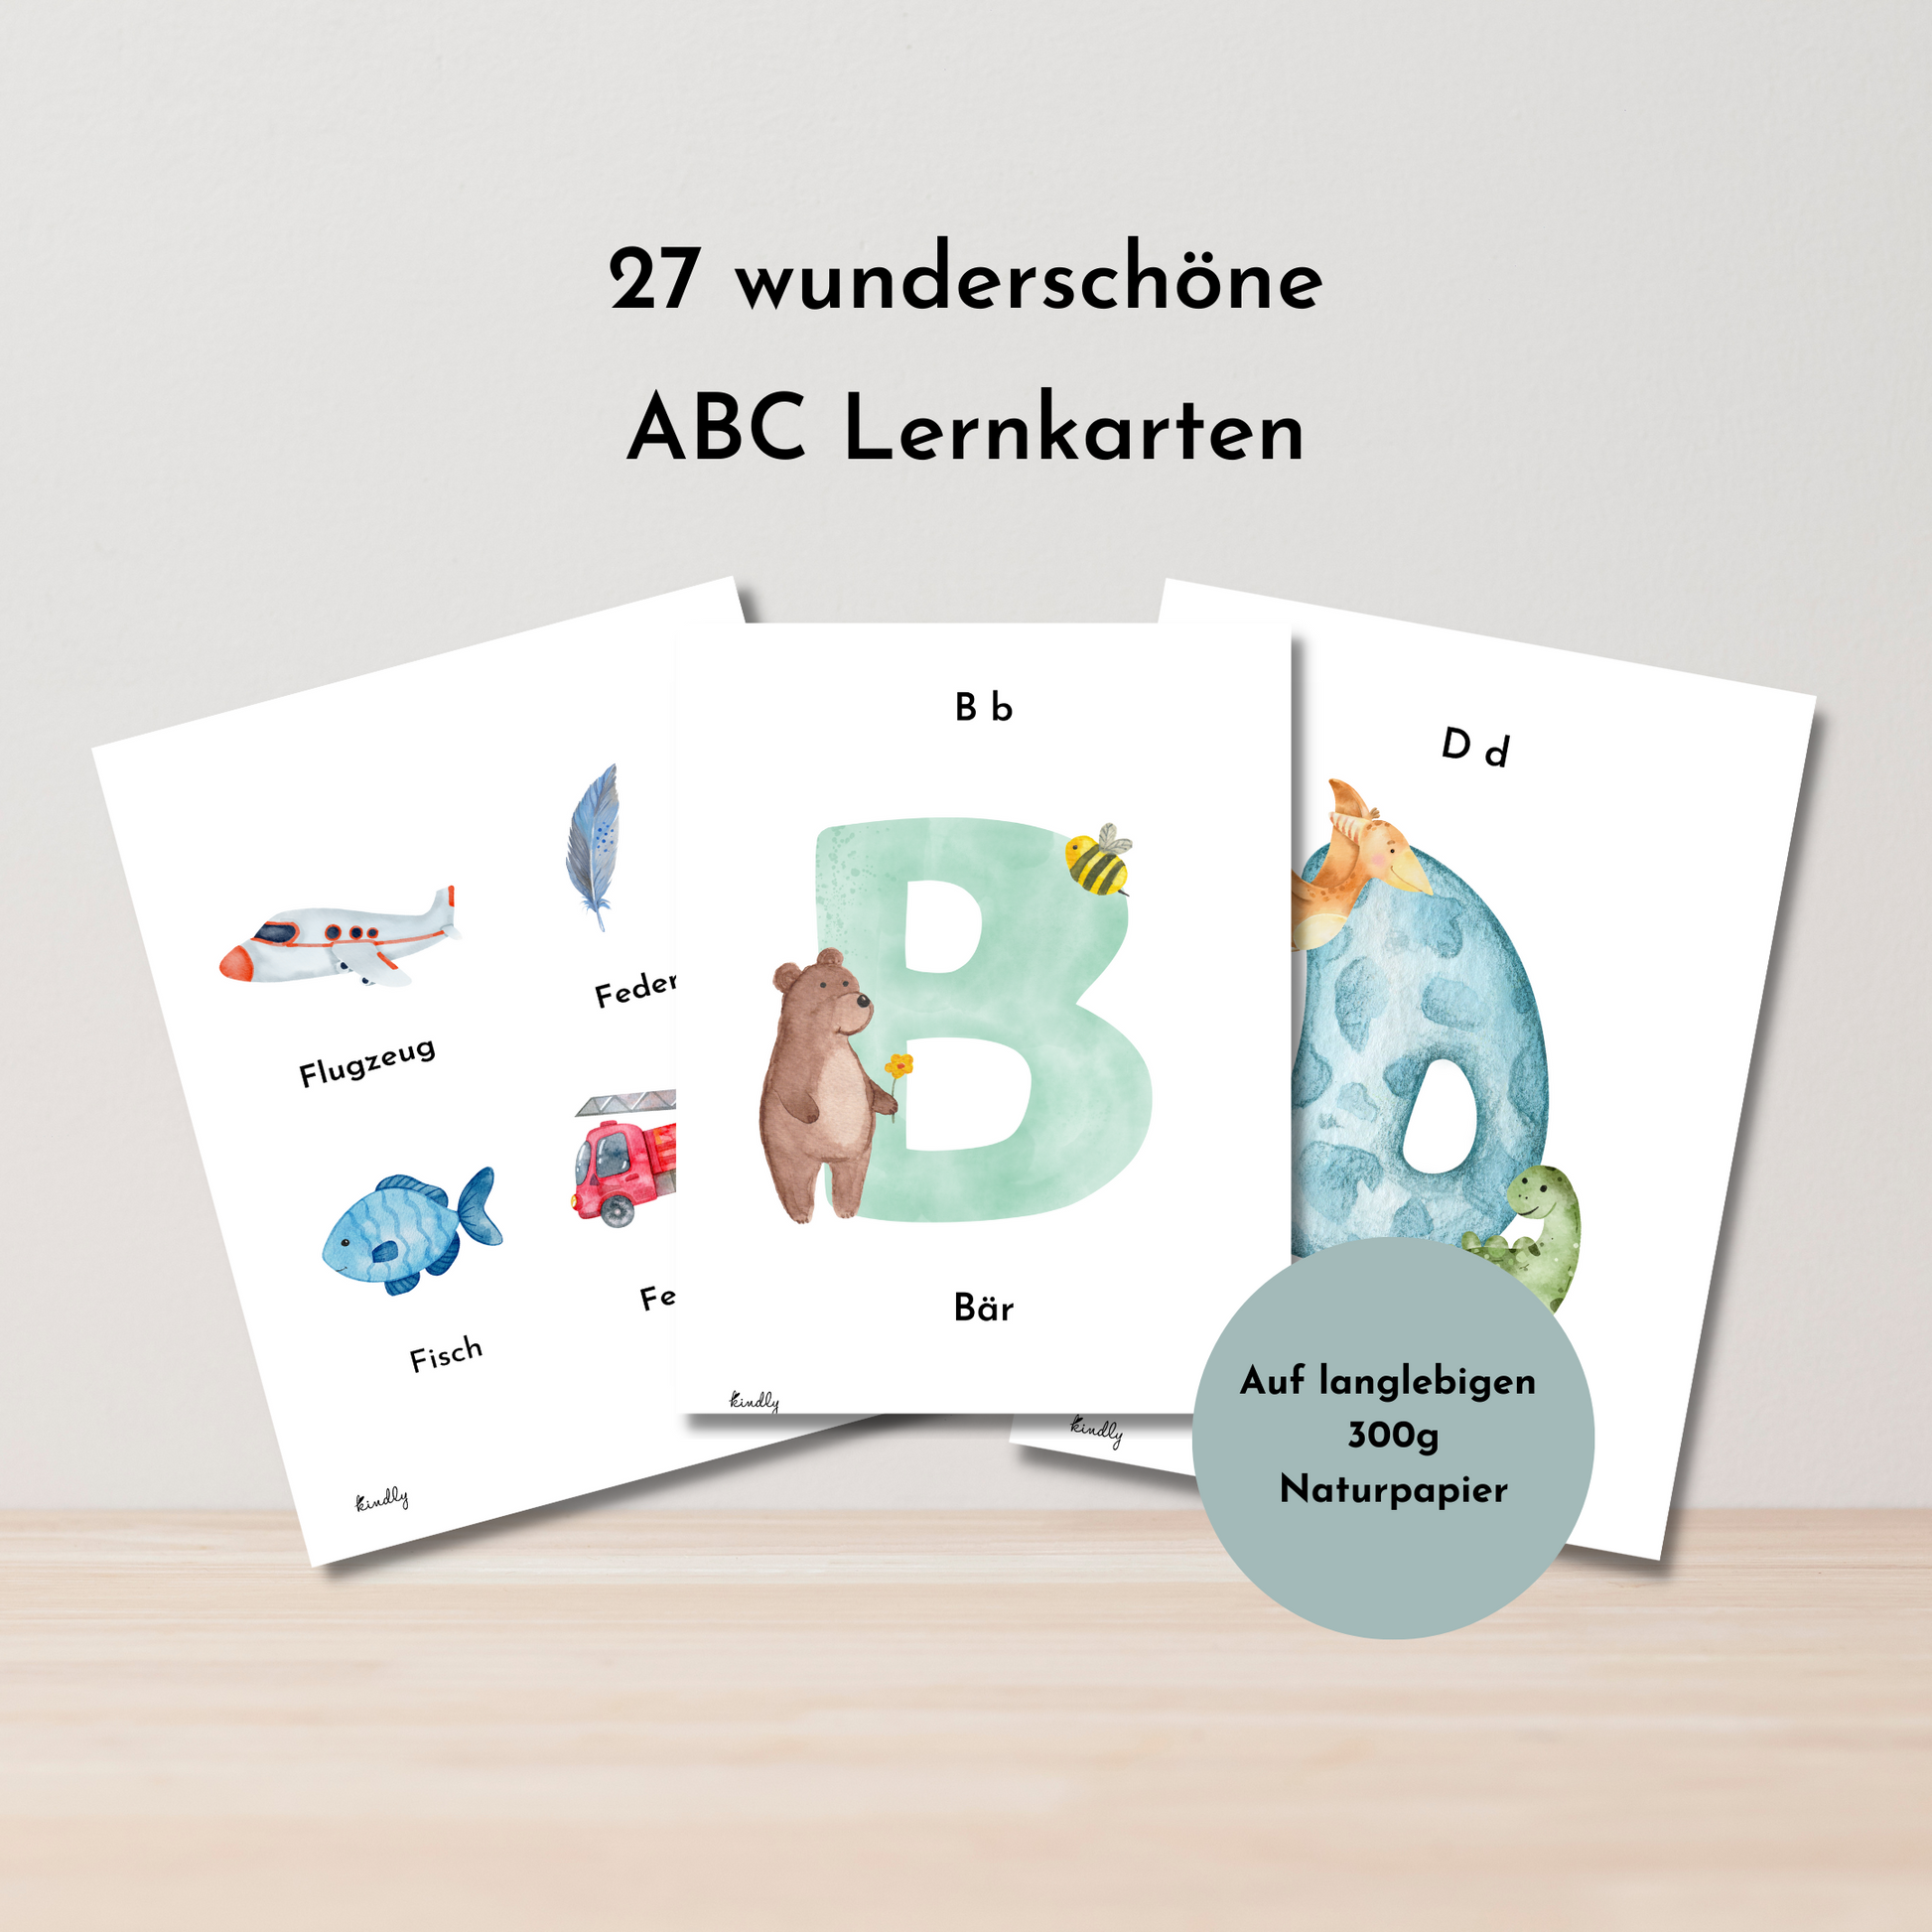 ABC Lernkarten - spielerisches Alphabet lernen für Kinder